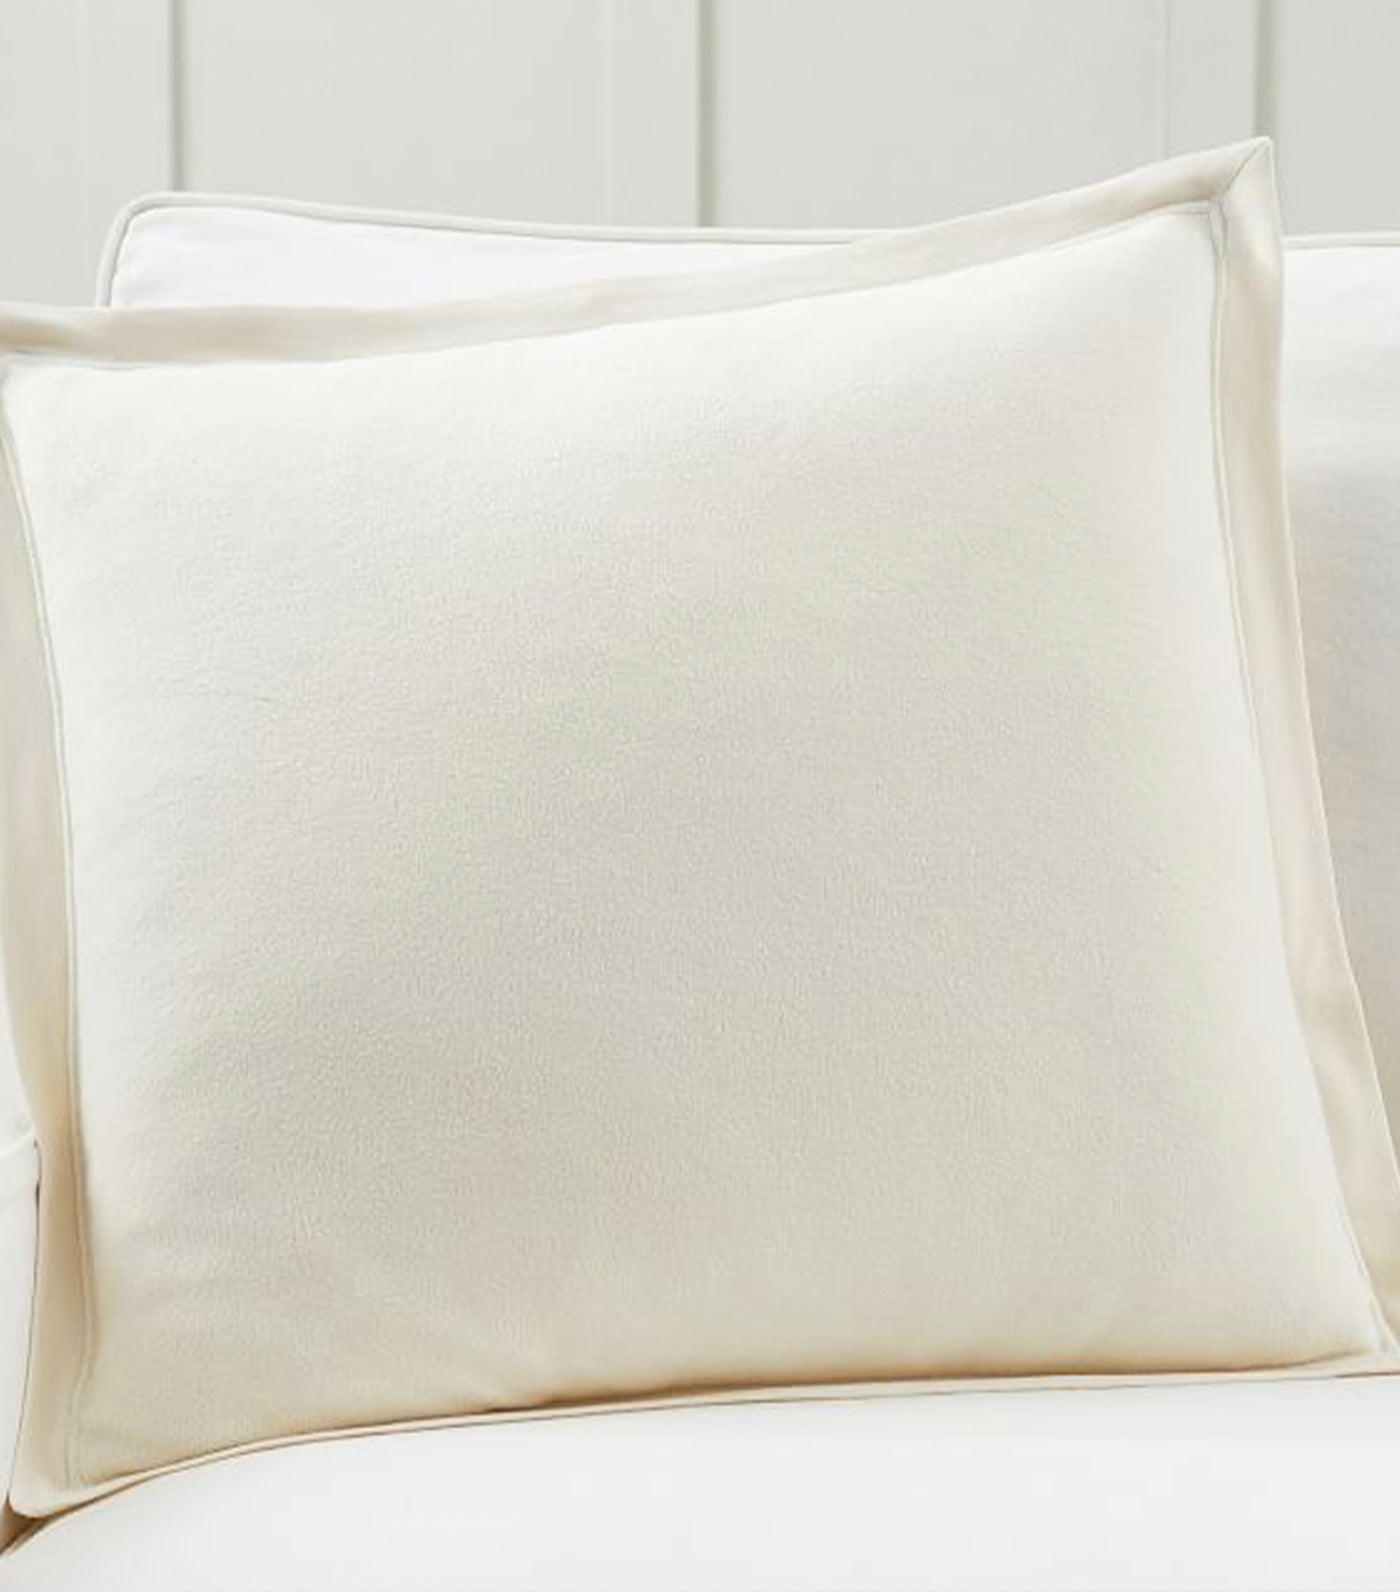 Cozy Fleece Pillow Cover